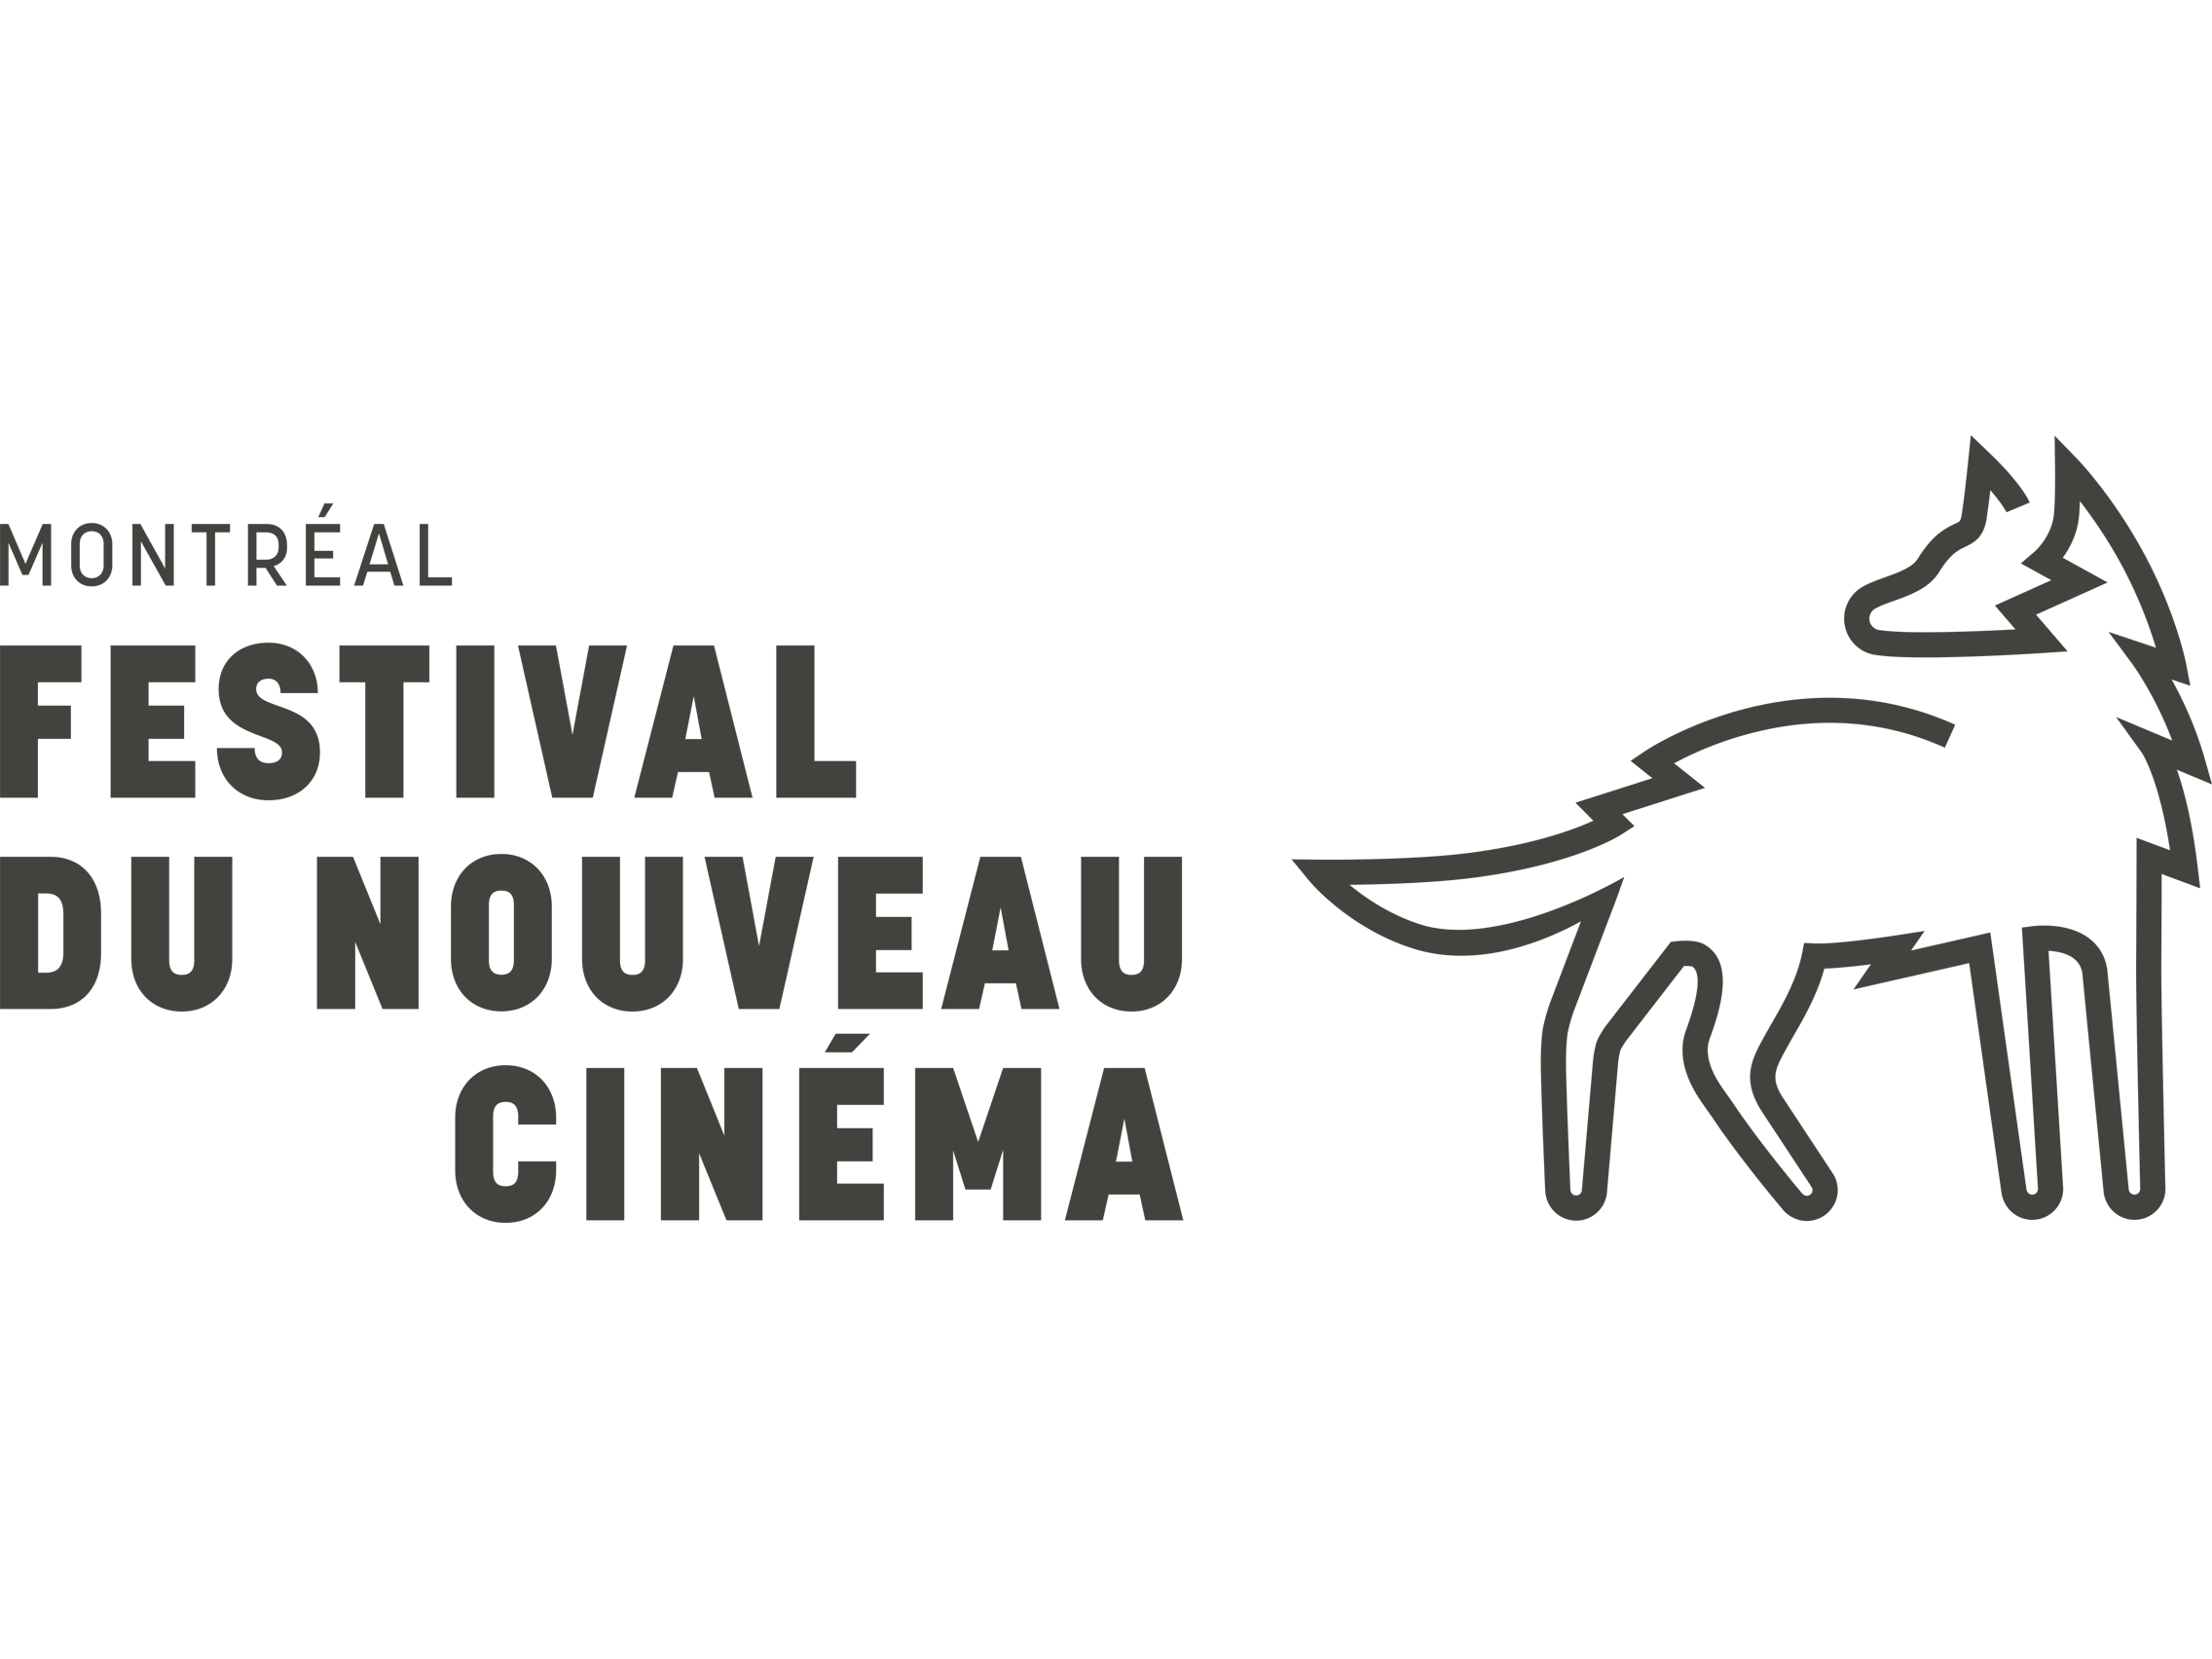 Festival-du-nouveau-cinéma-logo-and-wordmark.png